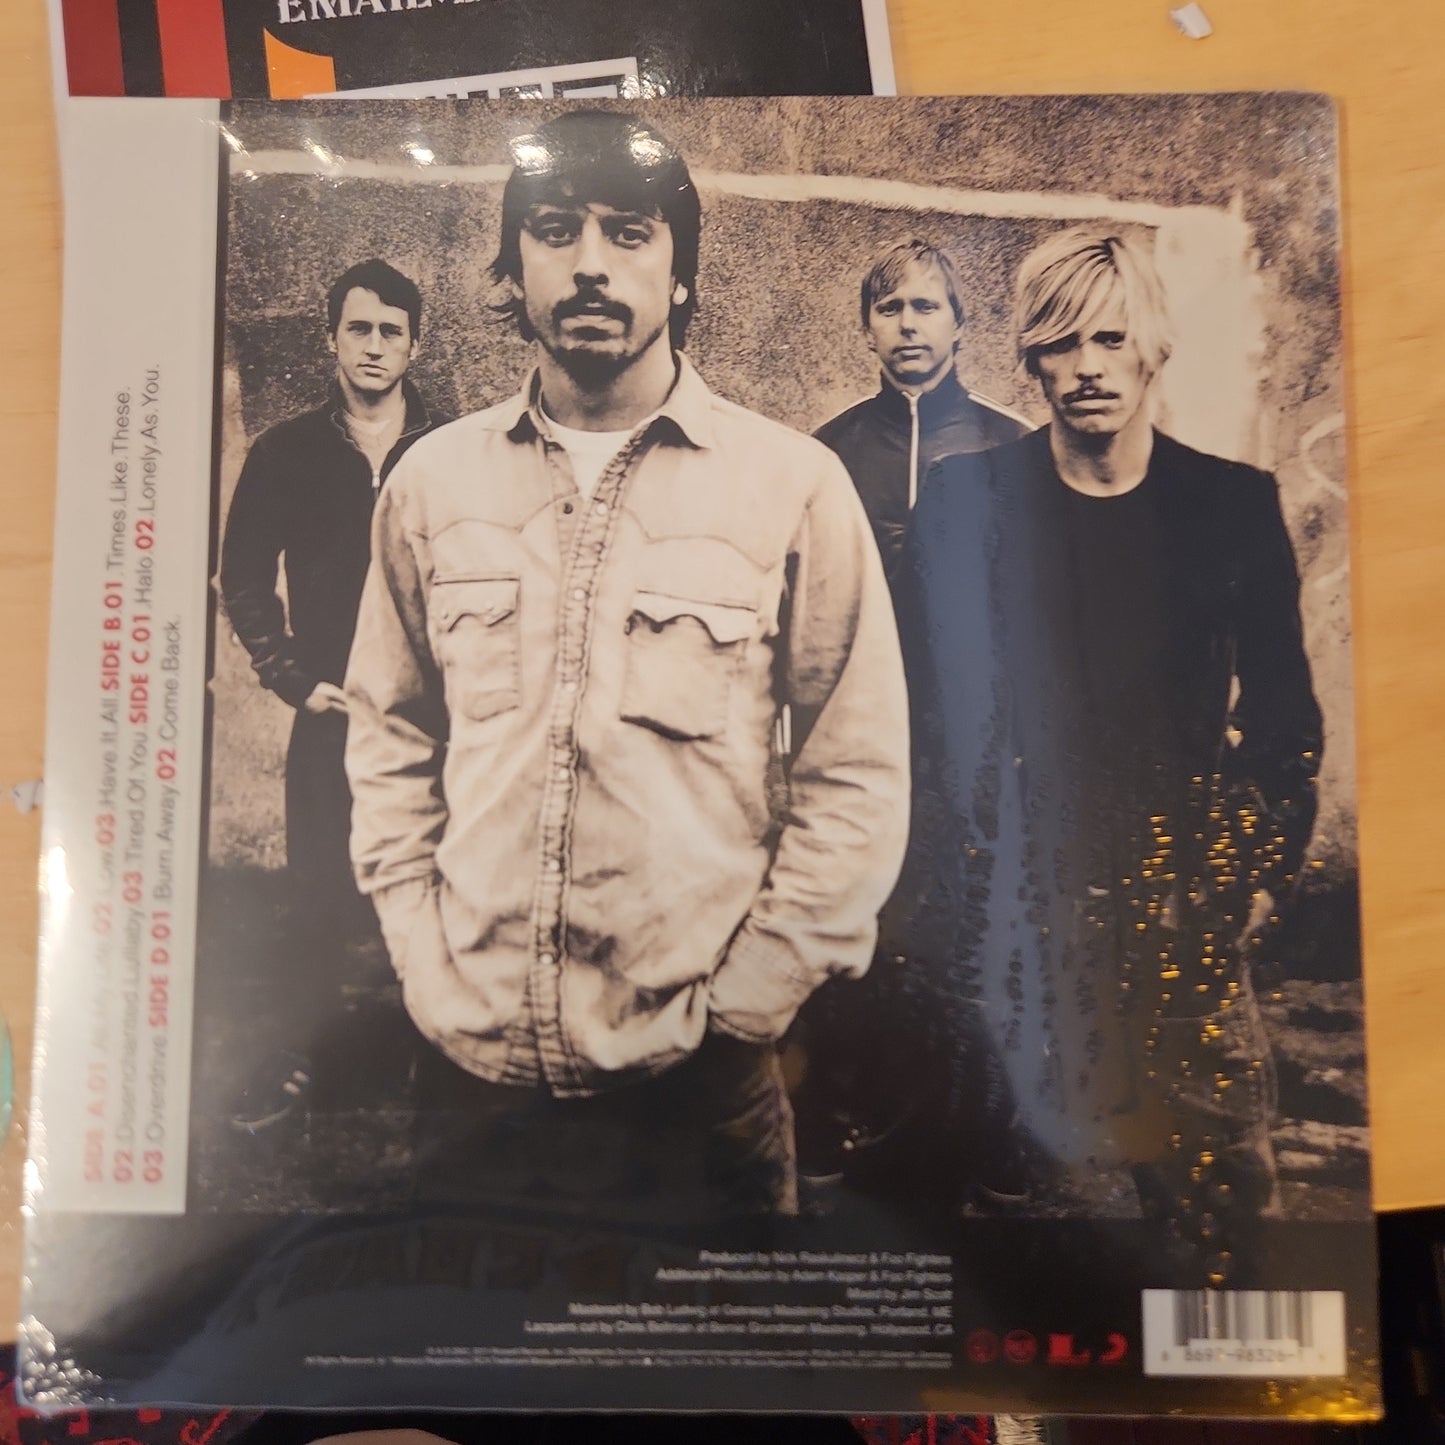 Foo Fighters - One by One - Vinyl LP